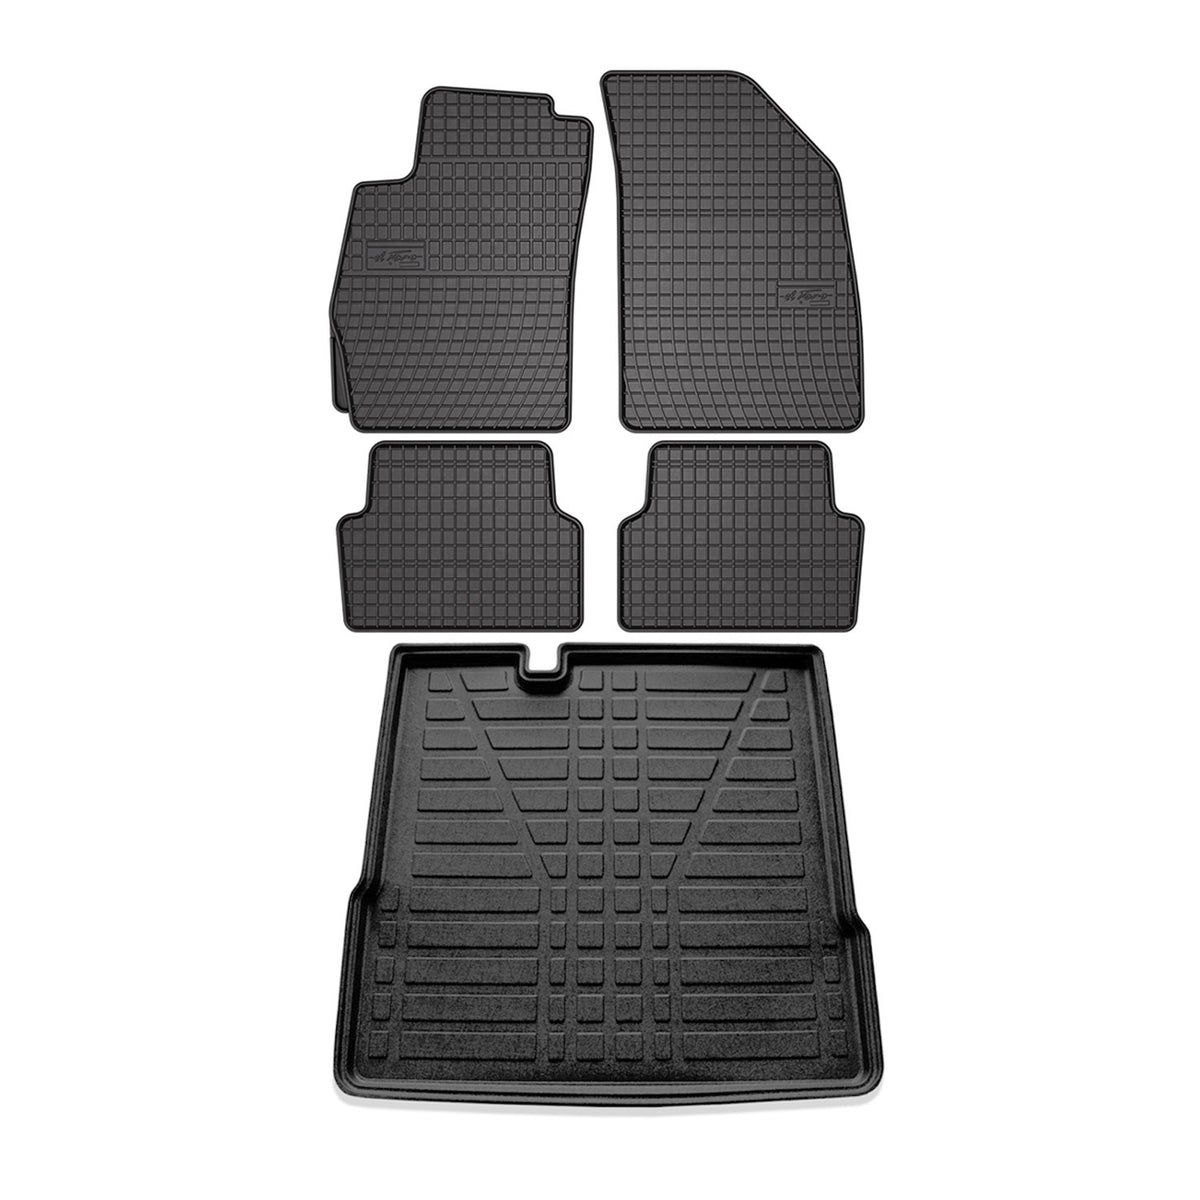 Fußmatten & Kofferraumwanne Set für Chevrolet Aveo 2011-2015 Schrägheck Gummi 5x